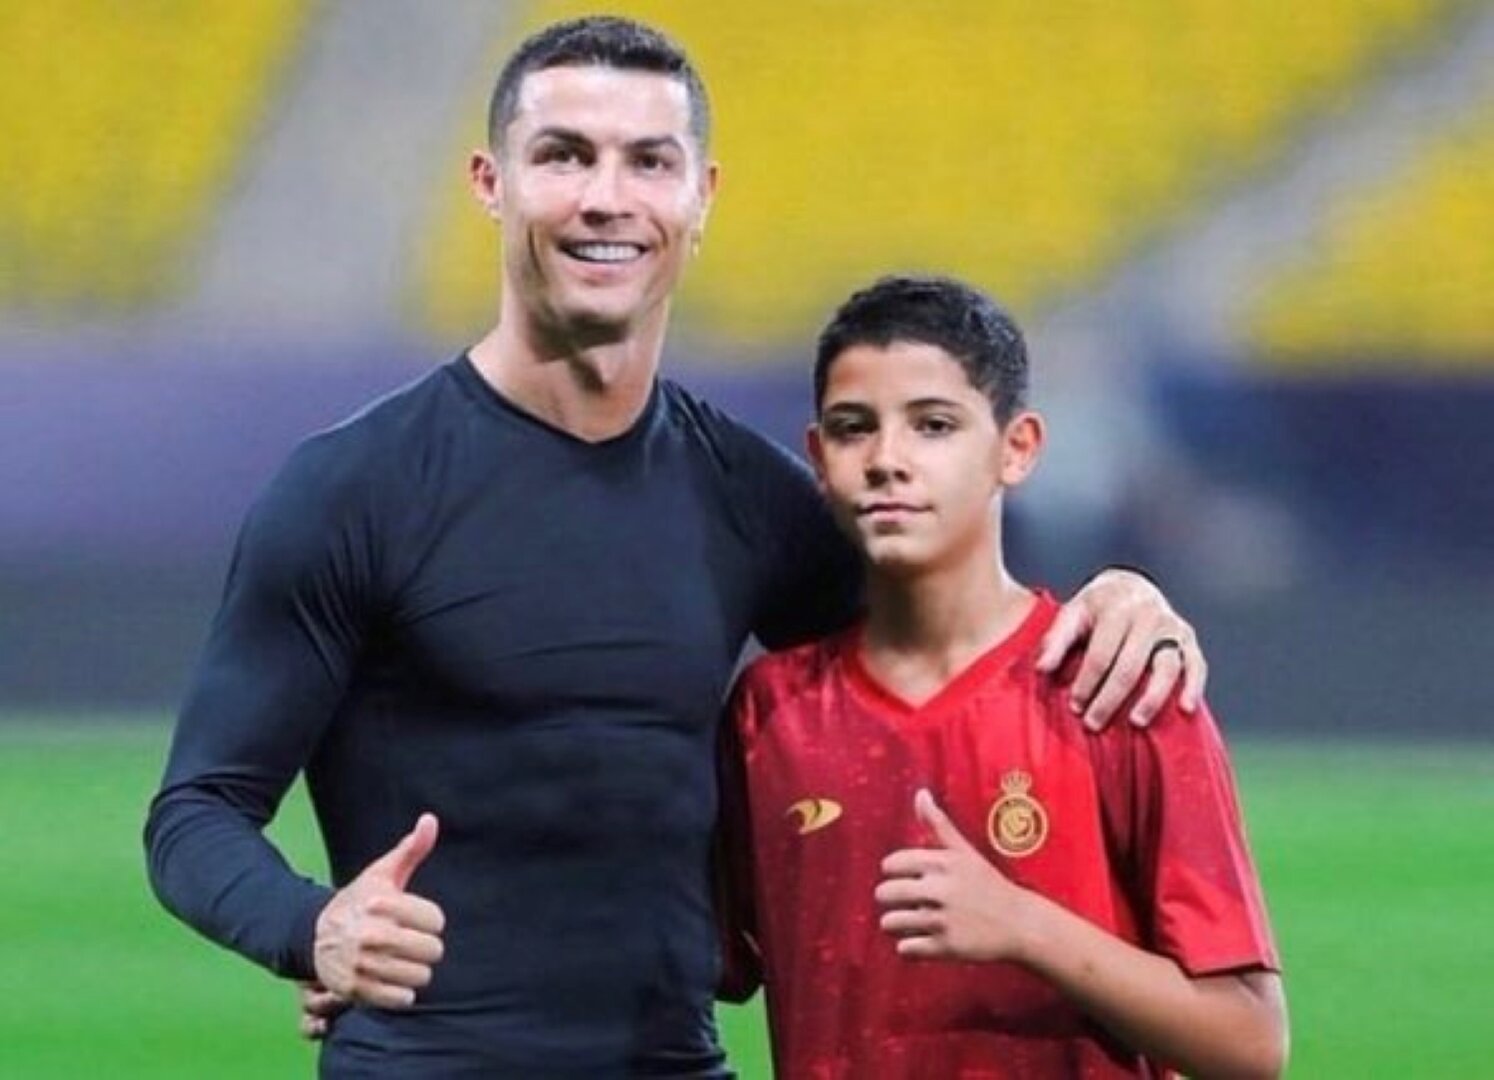 Le Meilleur du Football - 🚨 OFFICIEL ! Cristiano Ronaldo Junior signe avec  les U13 d'Al Nassr ! 🇸🇦 Il portera le numéro 7 comme son père 🤩🔥